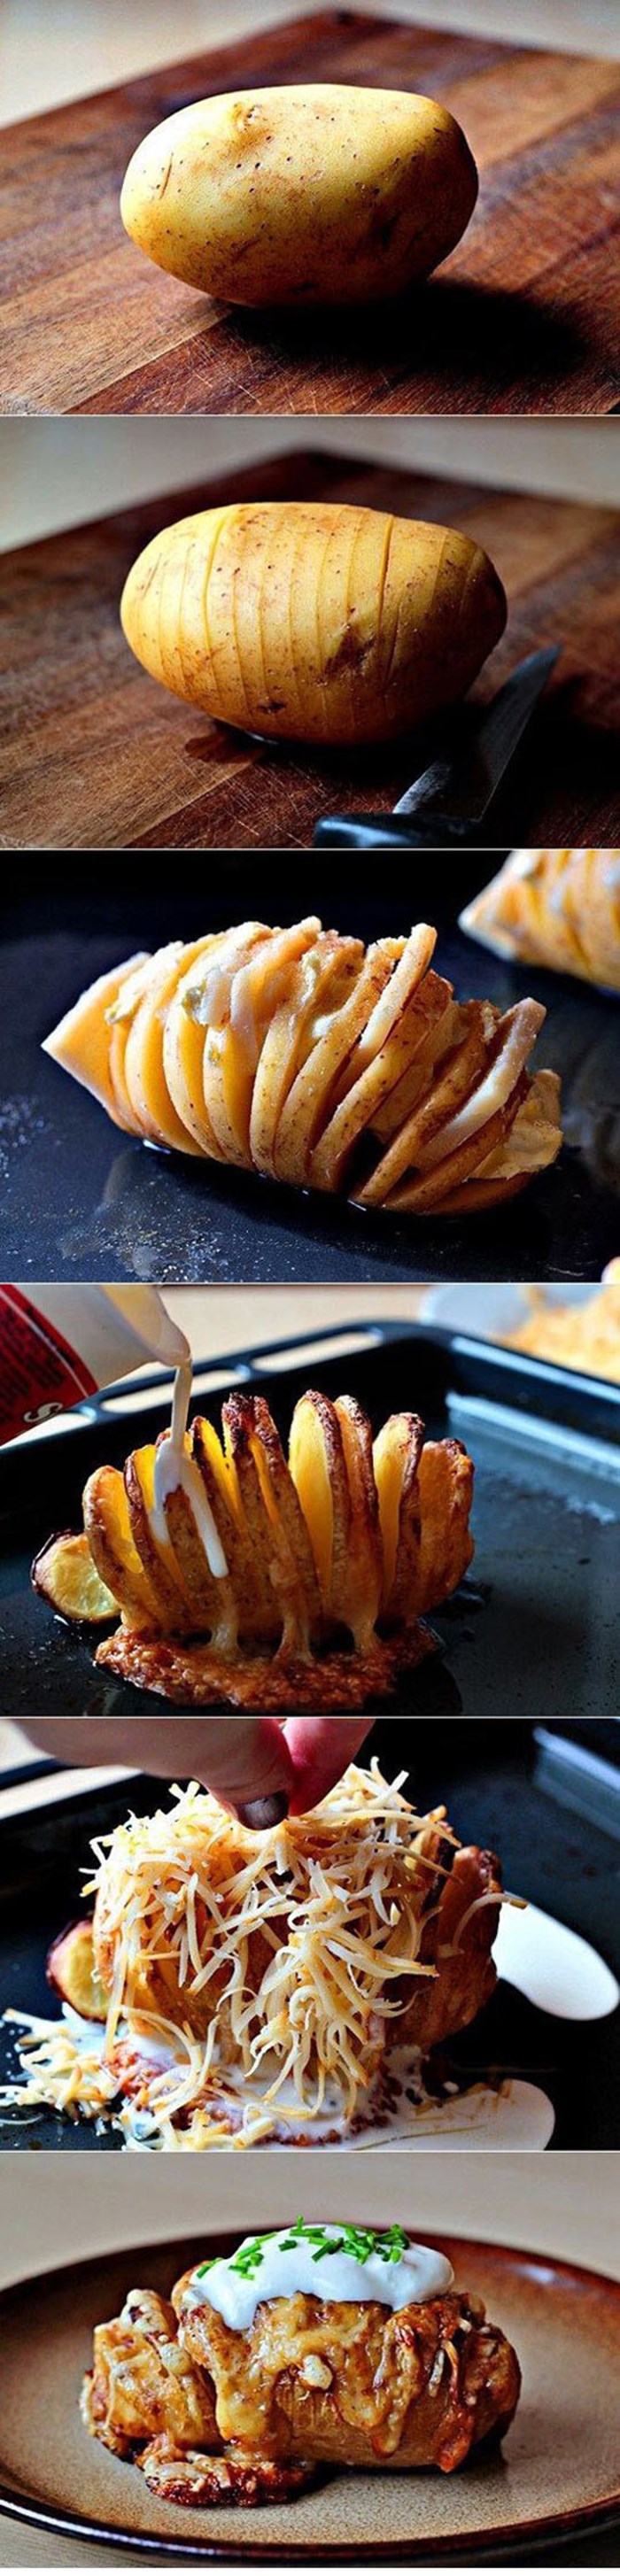 Fantastična ideja - Slastan krumpir iz pećnice uz koji možete poslužiti samo salatu